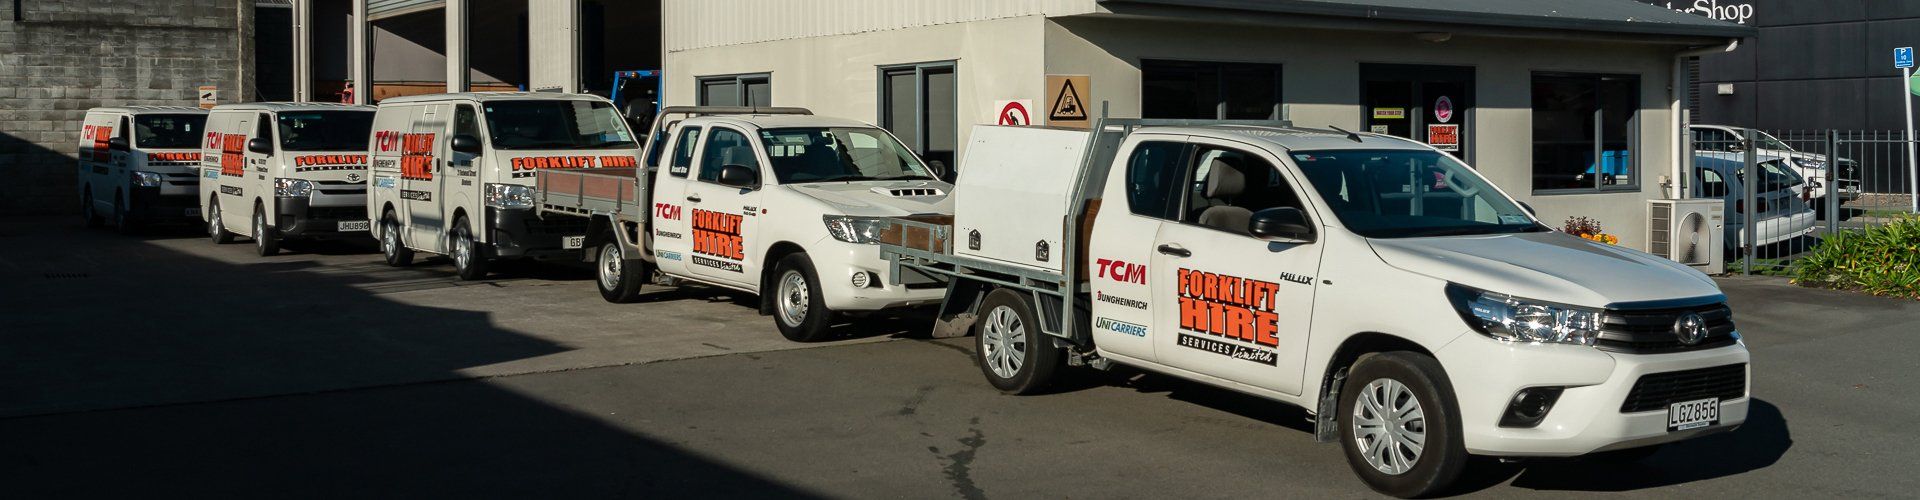 Forklift Hire Services Ltd vehicle fleet in Blenheim NZ